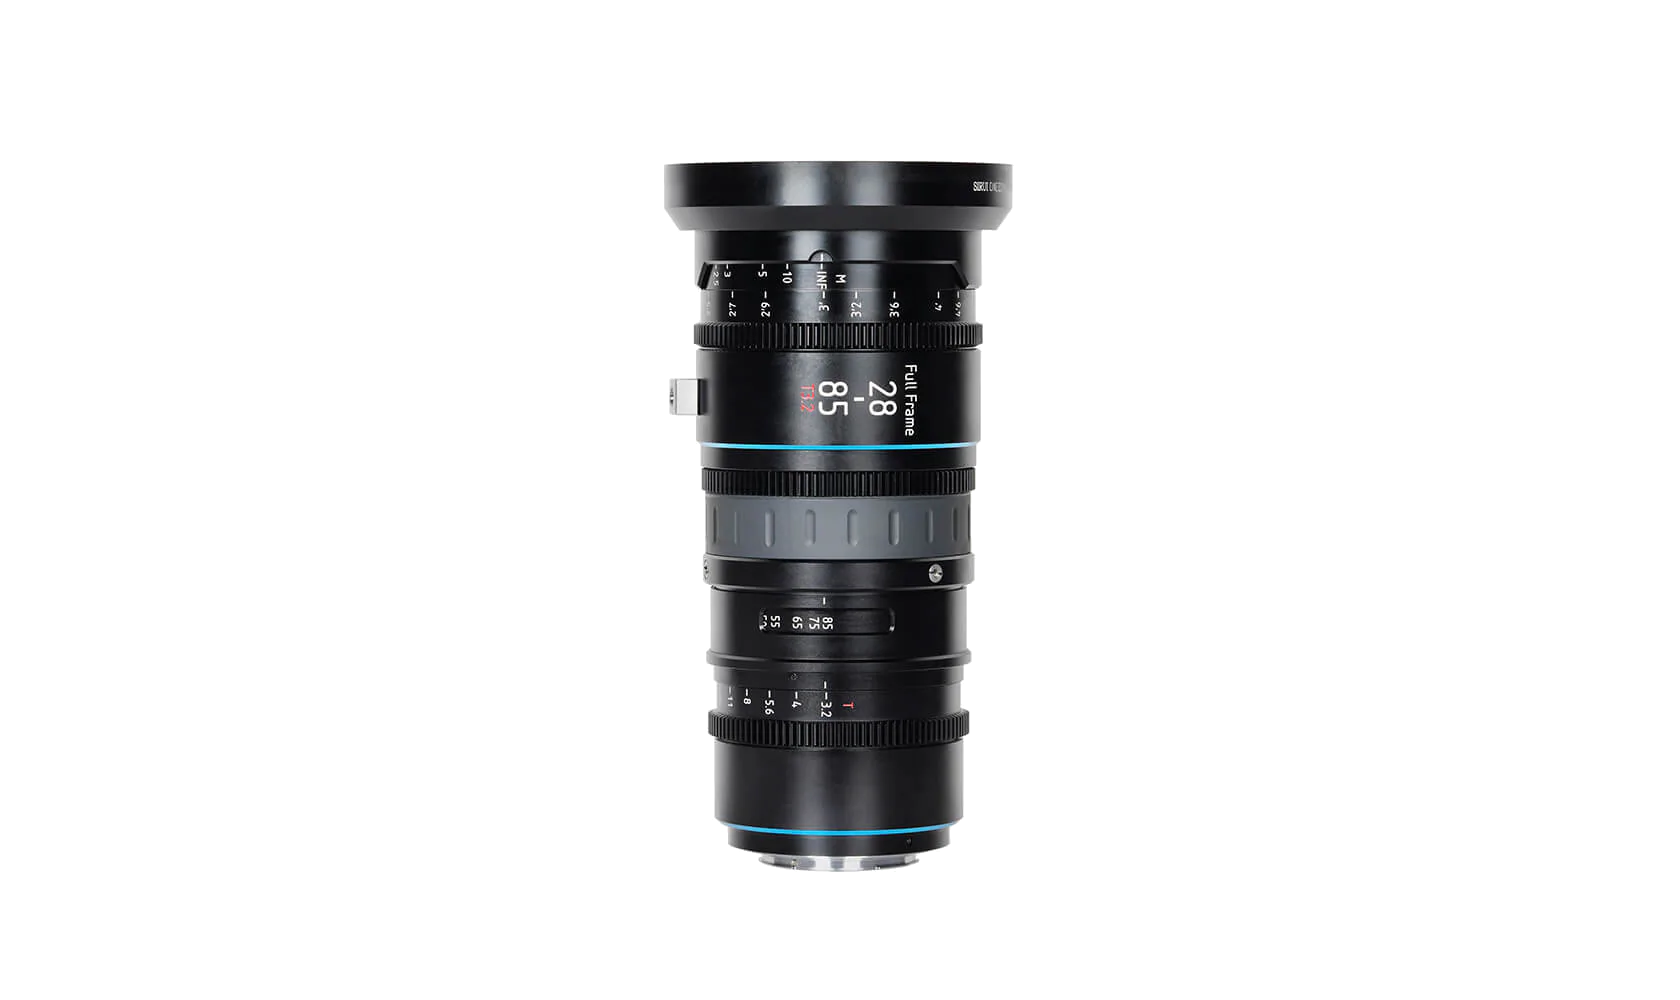 Sirui Jupiter Full-frame Macro Cine Zoom Lens 28-85mm EF mount